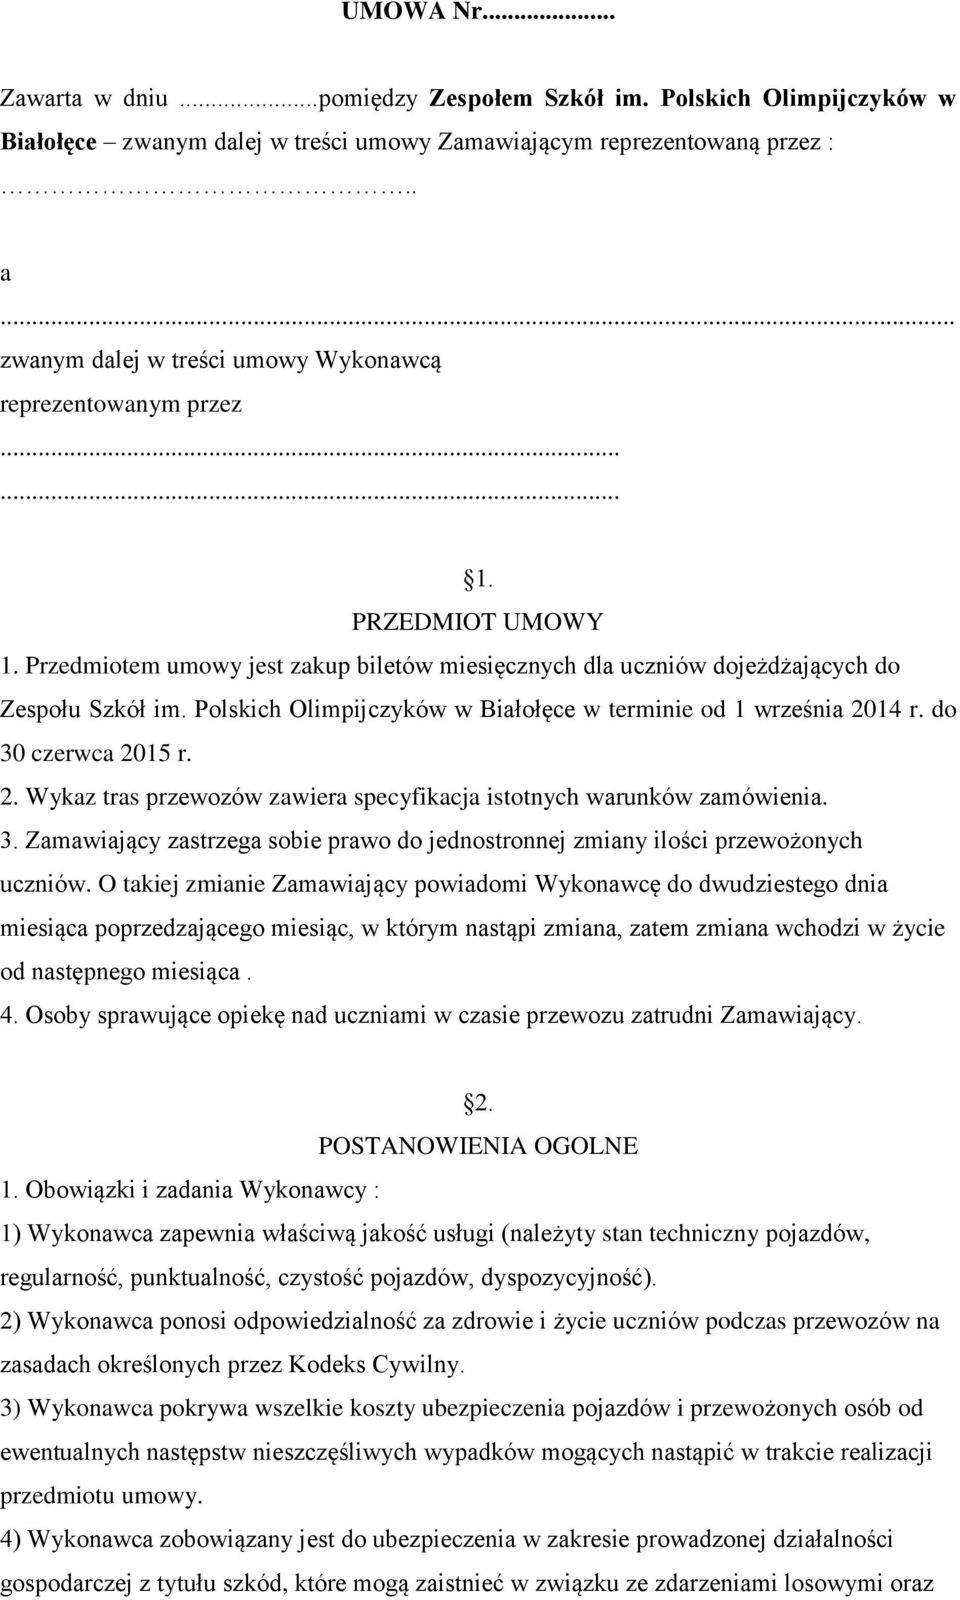 Polskich Olimpijczyków w Białołęce w terminie od 1 września 2014 r. do 30 czerwca 2015 r. 2. Wykaz tras przewozów zawiera specyfikacja istotnych warunków zamówienia. 3. Zamawiający zastrzega sobie prawo do jednostronnej zmiany ilości przewożonych uczniów.